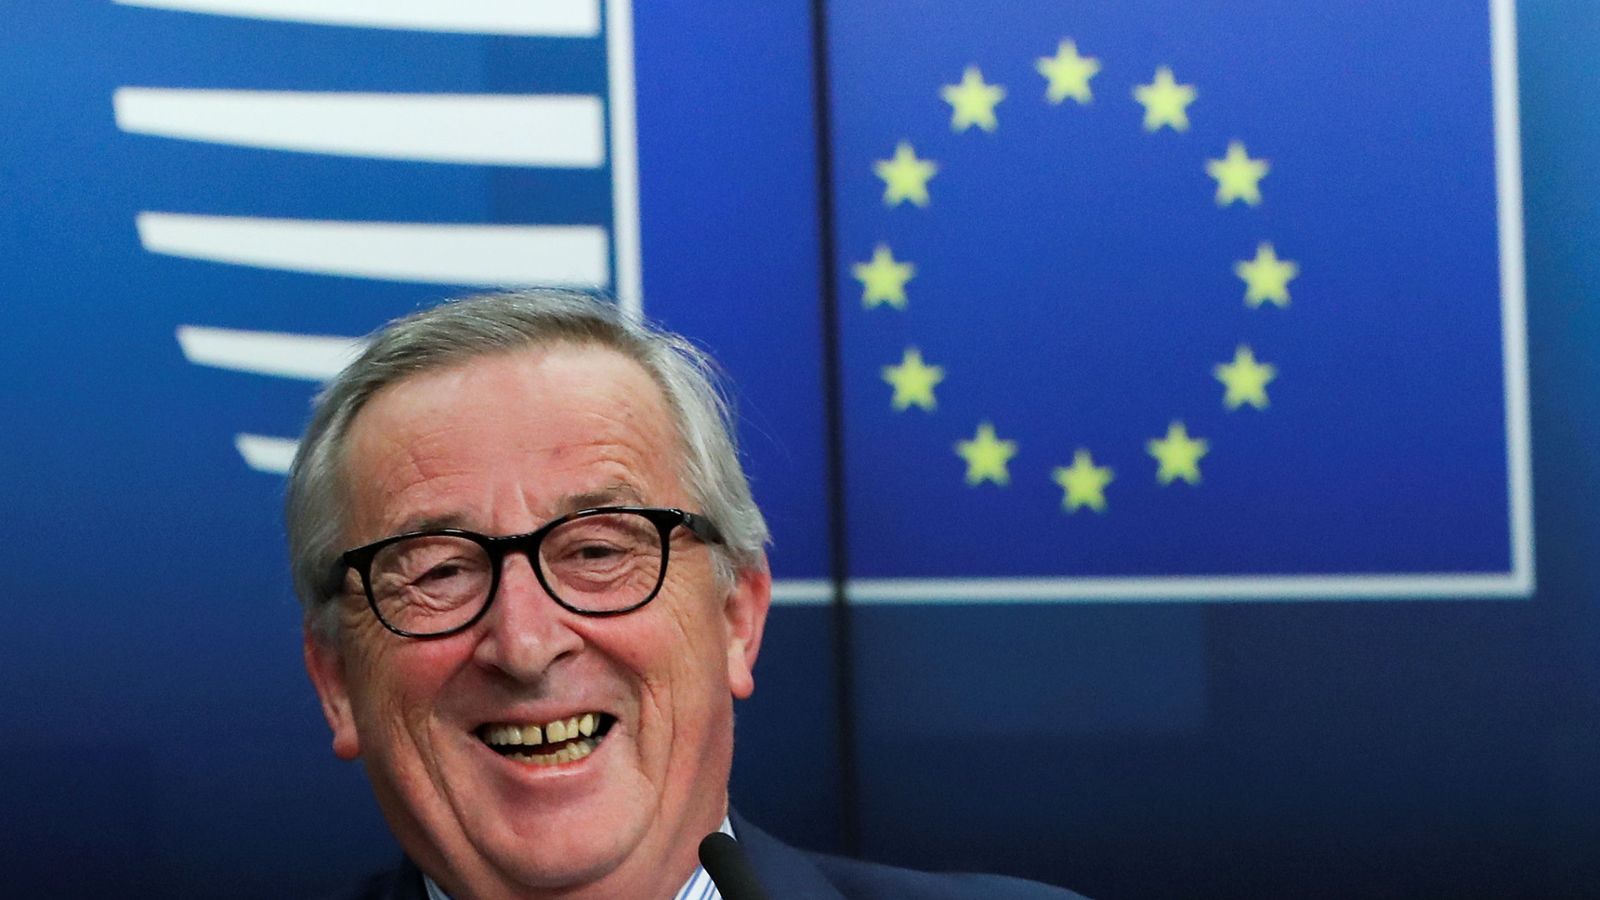 Foto: El presidente de la Comisión Europea Jean-Claude Juncker sonríe durante una rueda de prensa tras la cumbre de la UE en Bruselas el pasado viernes. (Reuters)